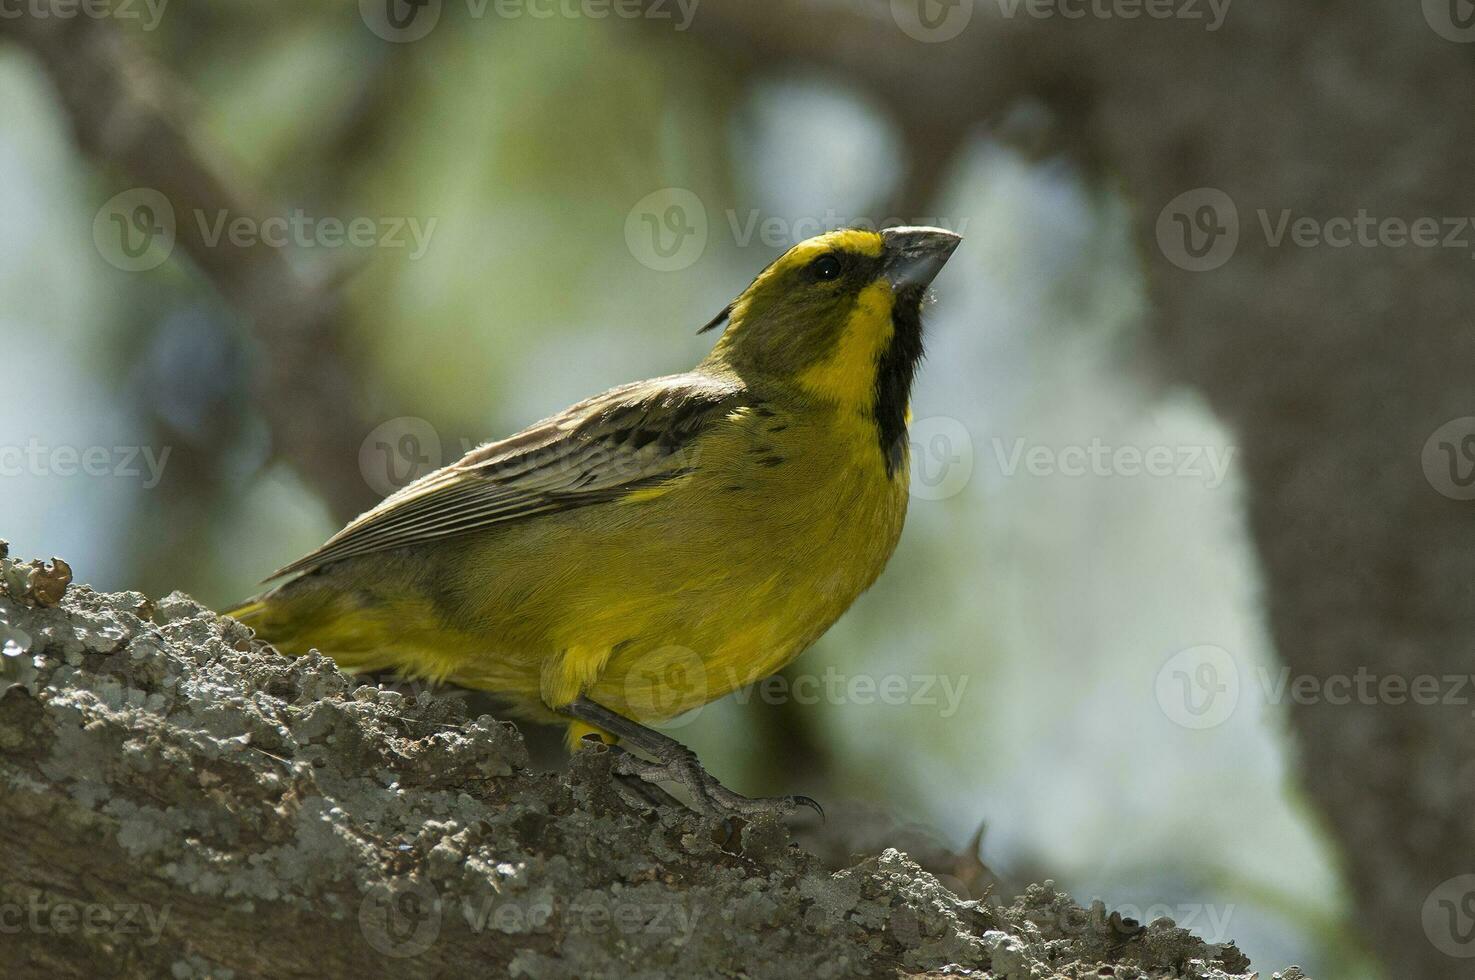 giallo cardinale, governatrice cristata, in via di estinzione specie nel la pampa, argentina foto